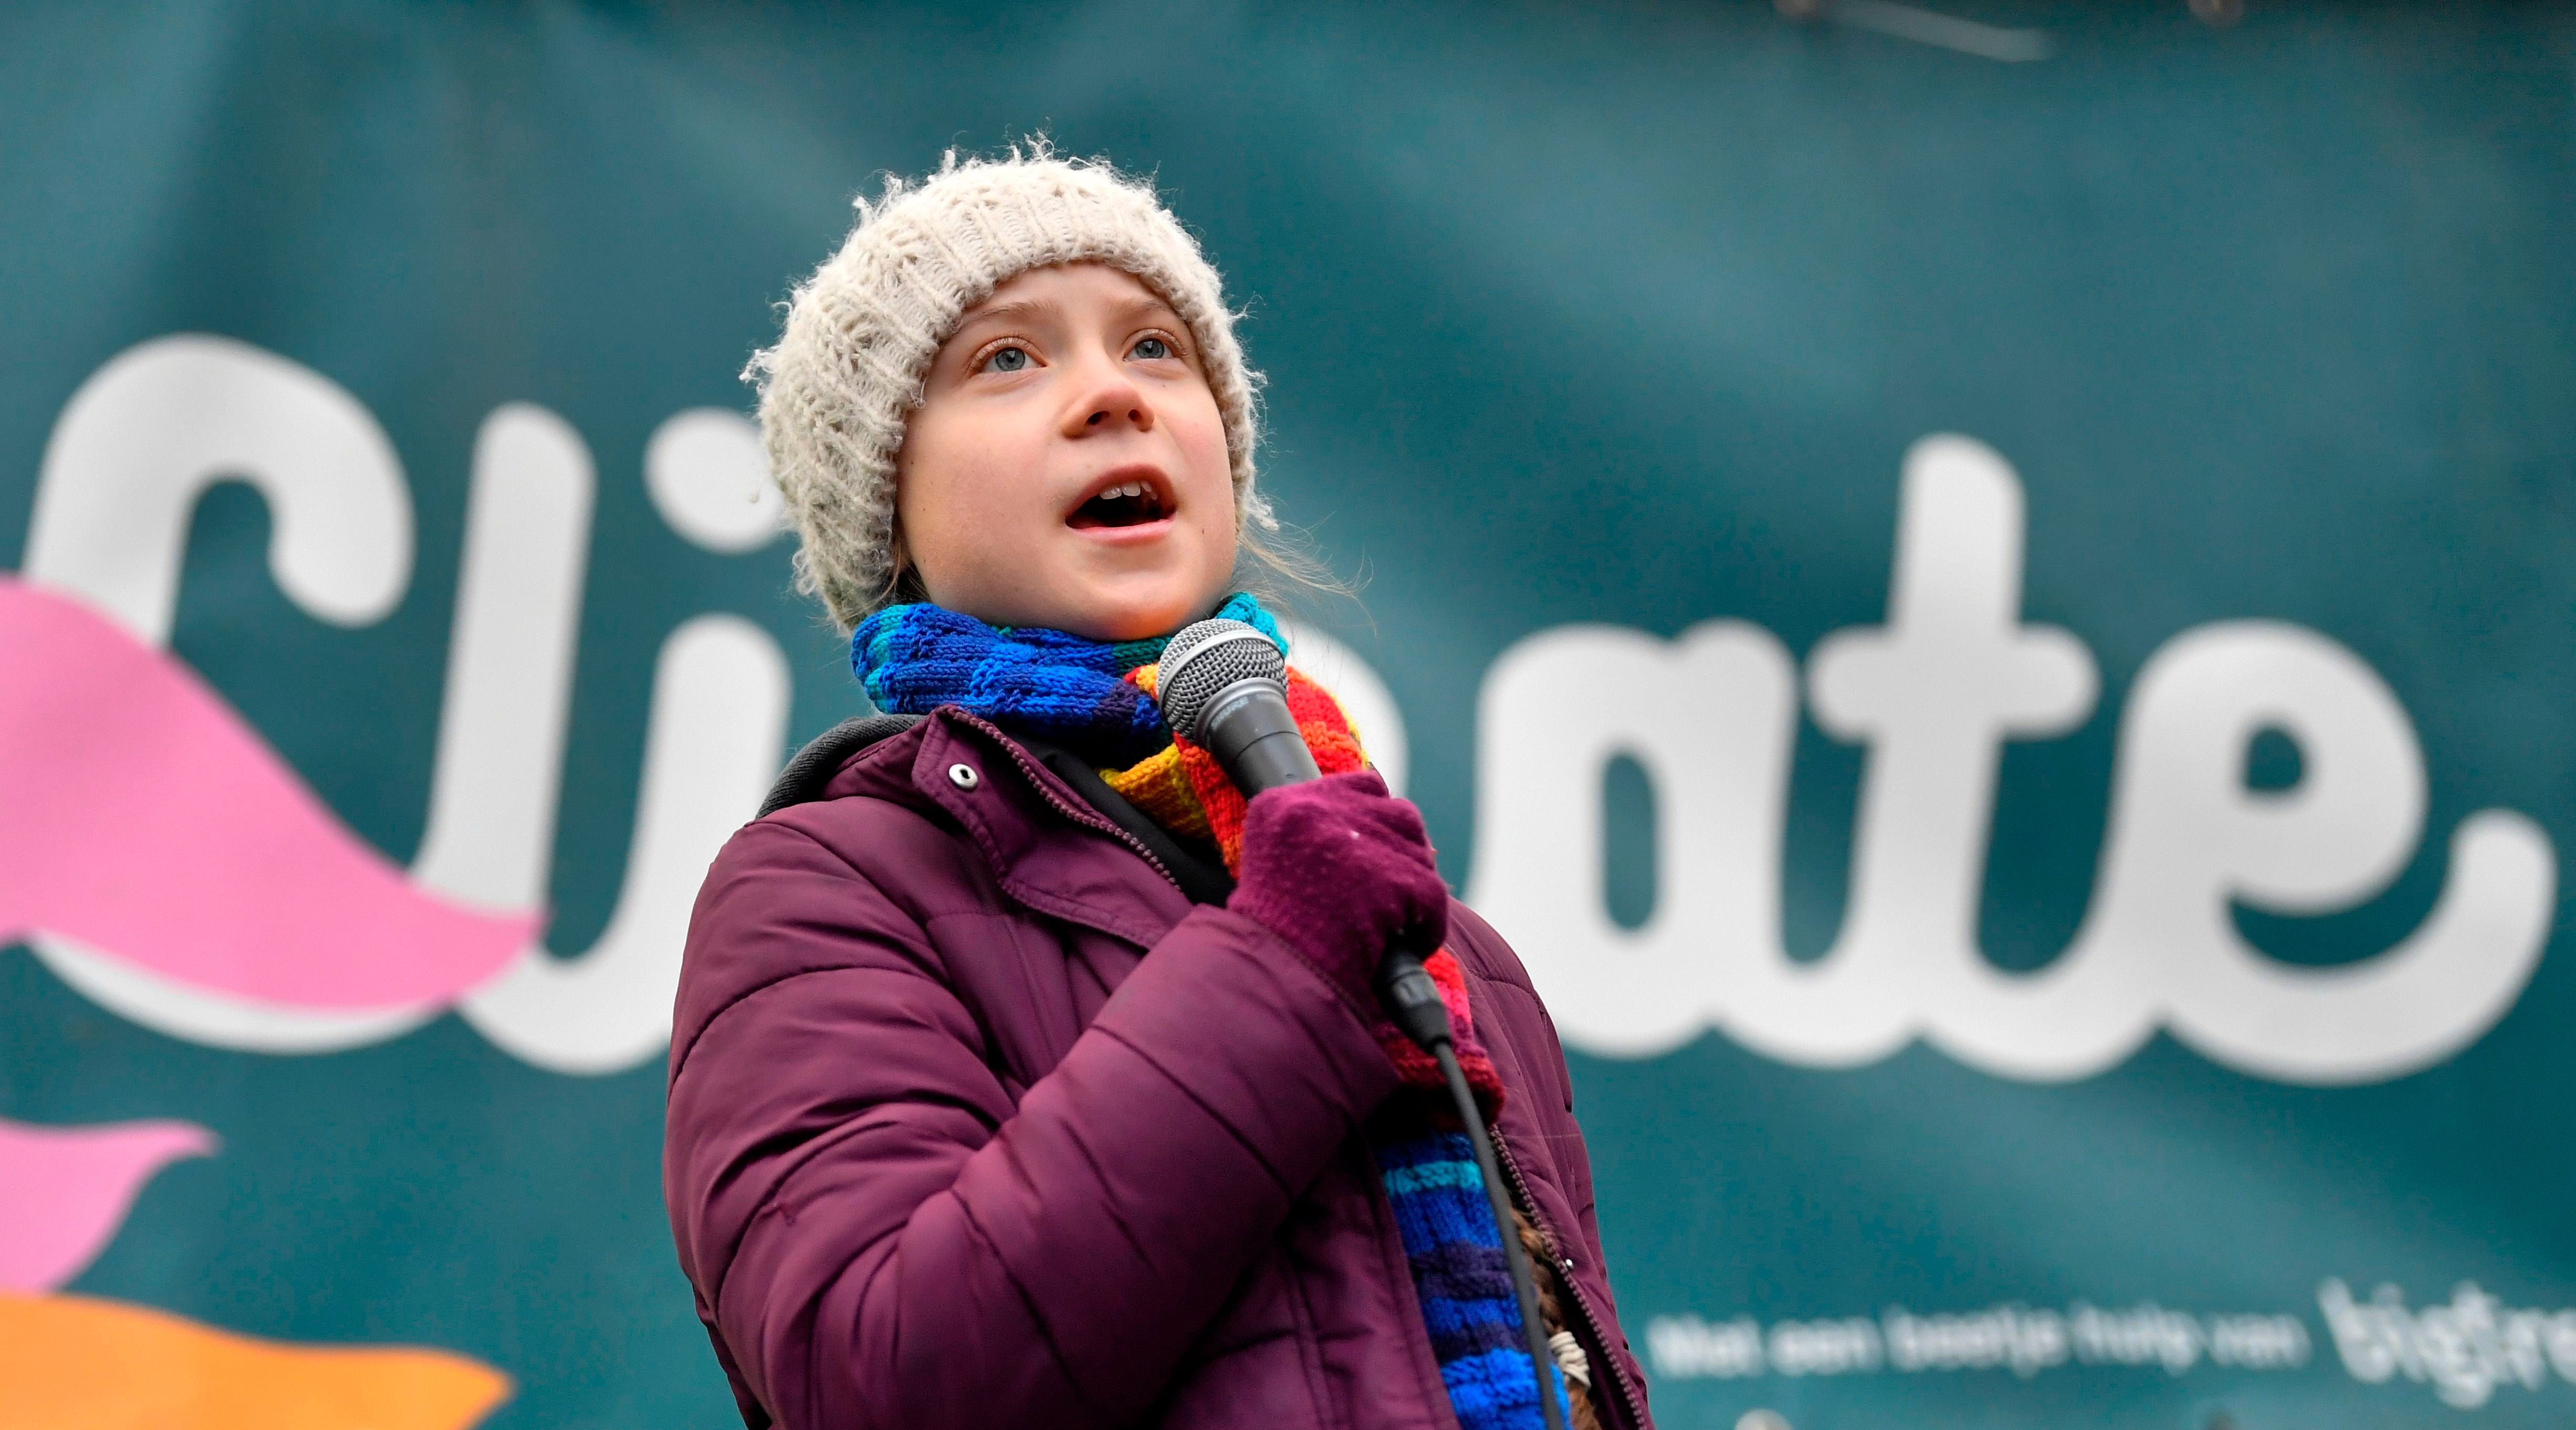 (ARCHIVOS) En esta foto de archivo tomada el 6 de marzo de 2020, la ambientalista sueca Greta Thunberg habla durante una marcha de protesta "Youth Strike 4 Climate" en Bruselas. - La activista climática Greta Thunberg fue galardonada el 20 de junio con un premio de derechos portugueses y rápidamente prometió el premio de un millón de euros a grupos que trabajan para proteger el medio ambiente y detener el cambio climático.&nbsp;